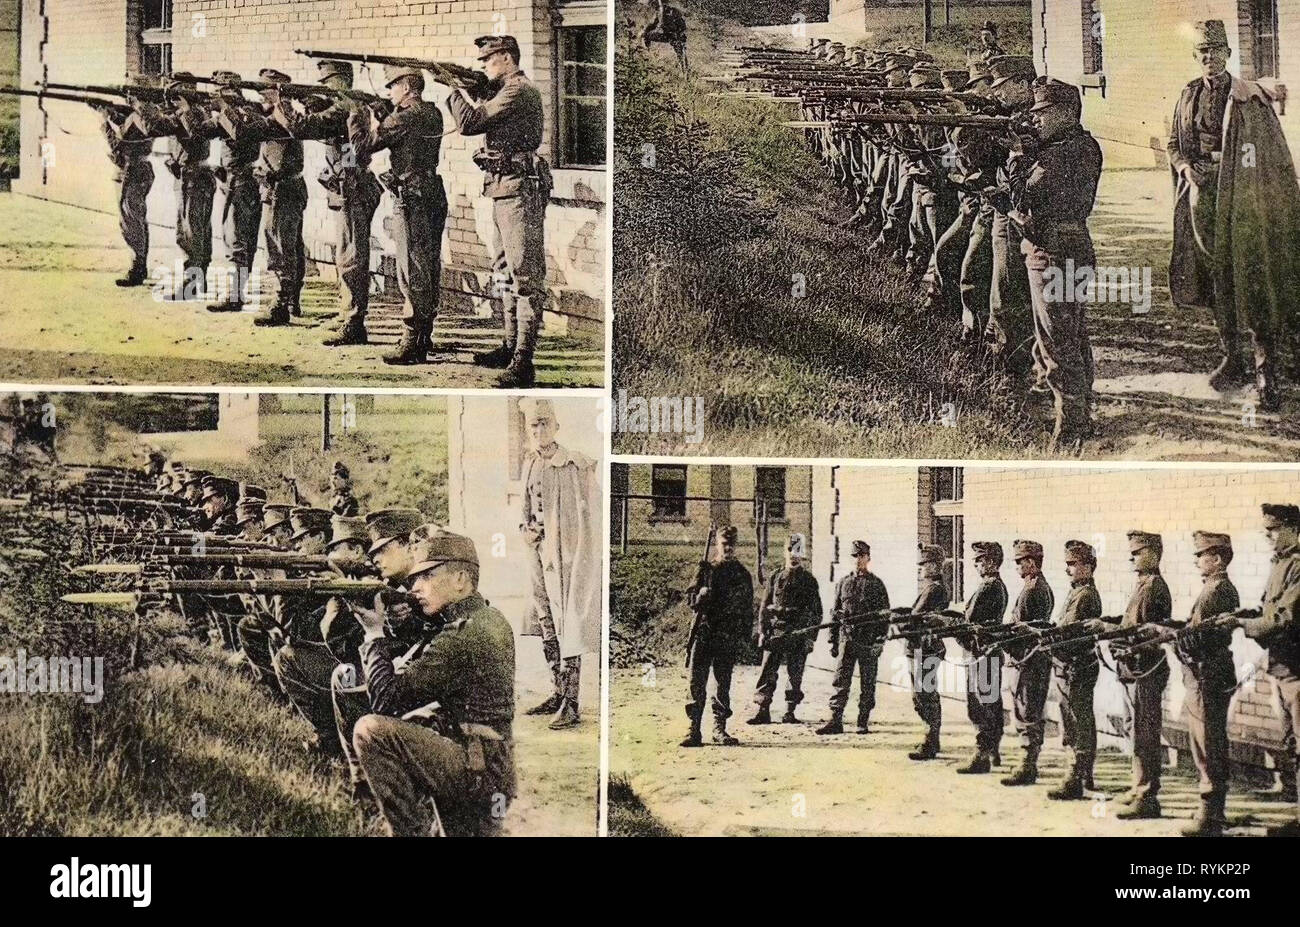 Infanterie Kaserne von Österreich-ungarn, österreichisch-ungarischen Armee, Gebrauch von Waffen, Multiview Postkarten, 1912 Postkarten, Milowitz, 1912, Schützenübungen Stockfoto